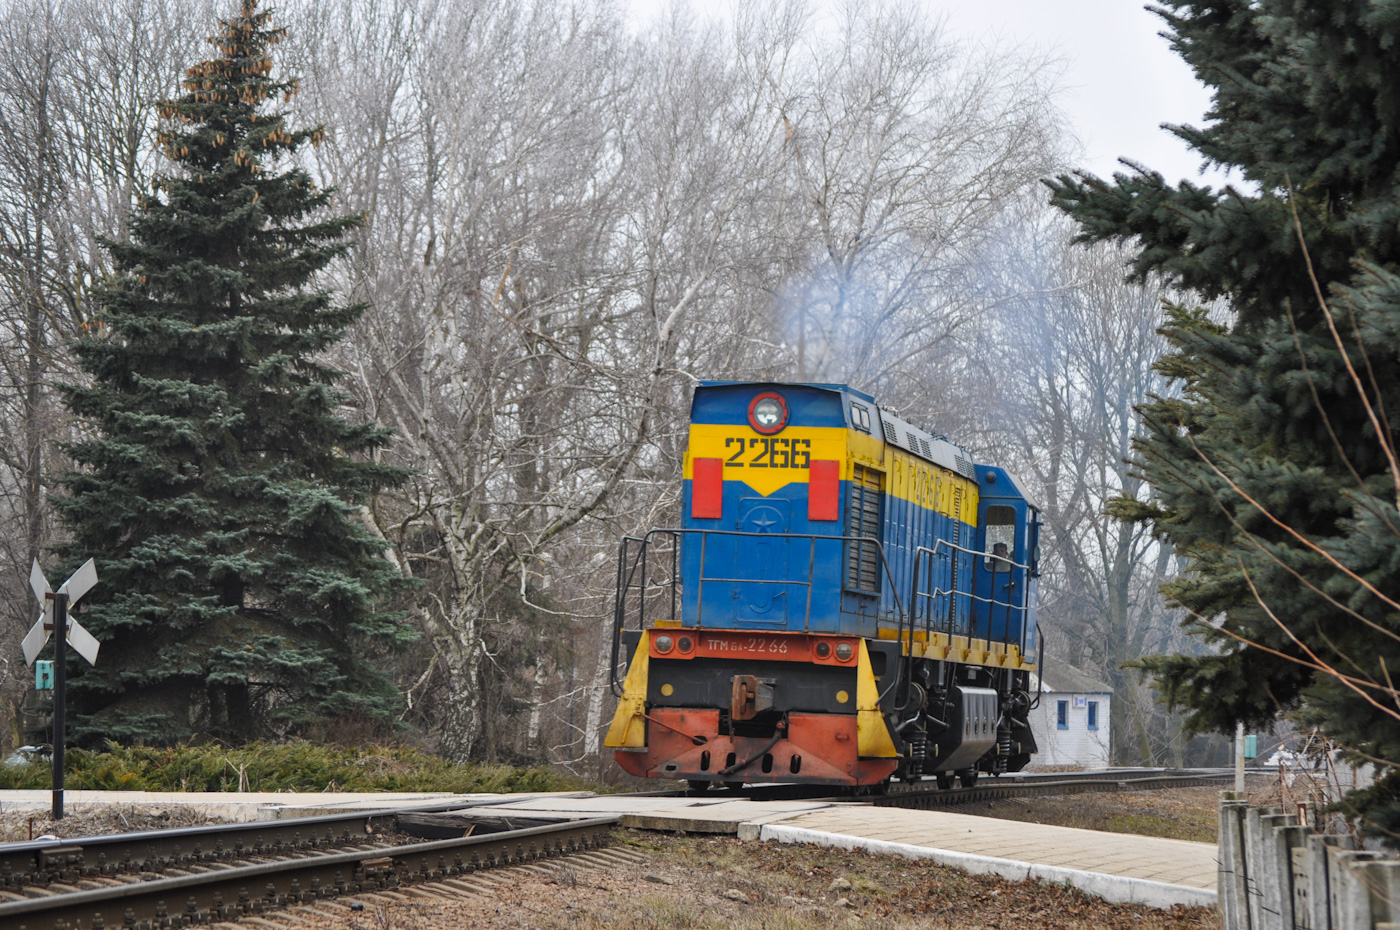 ТГМ6А-2266; Донецкая железная дорога — Разные фотографии